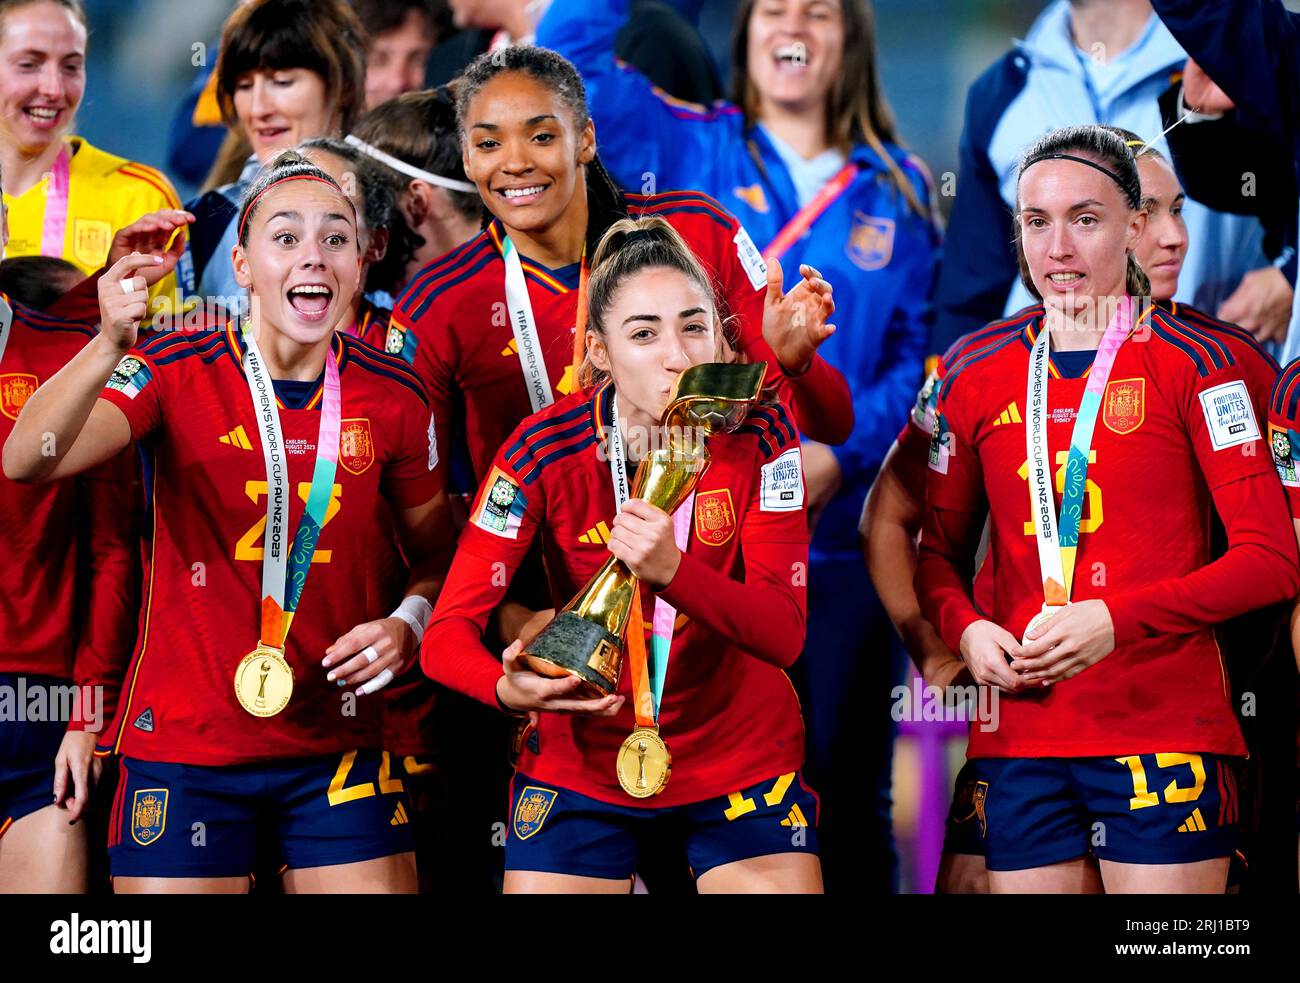 Die Spanierin Olga Carmona (Mitte) feiert mit der Trophäe der FIFA Frauen-Weltmeisterschaft, nachdem sie das Endspiel der FIFA Frauen-Weltmeisterschaft im Stadion Australien, Sydney, gewonnen hat. Bilddatum: Sonntag, 20. August 2023. Stockfoto